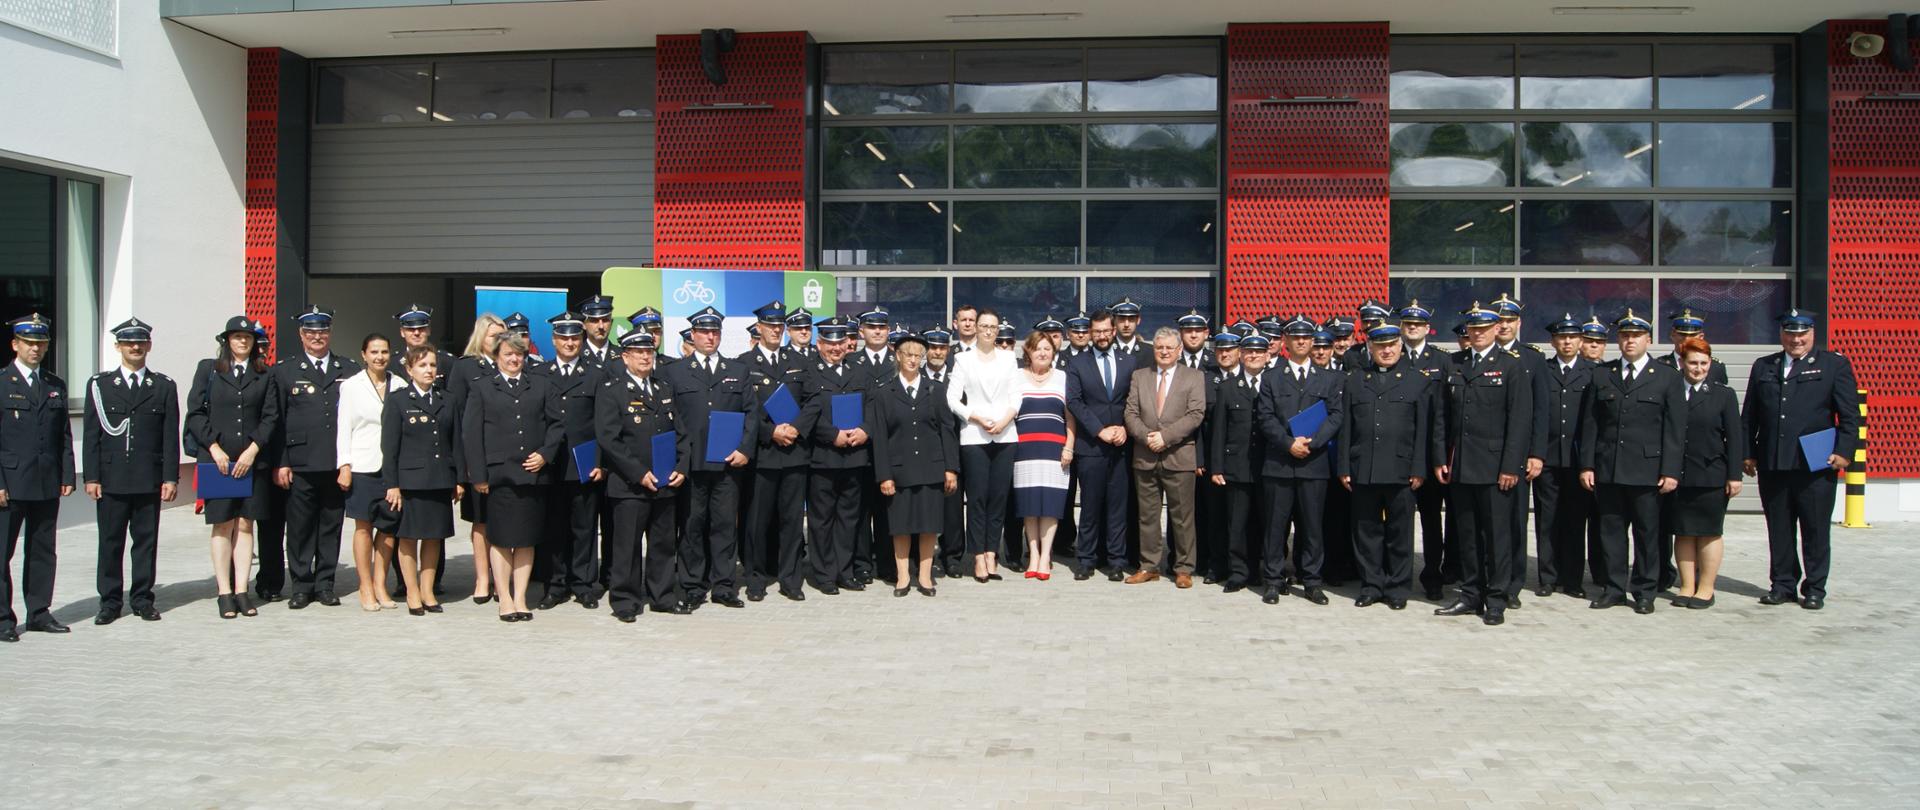 Zdjęcie grupowe po zakończonej uroczystości wręczenie dofinansowań dla OSP przy JRG1 Koszalin 